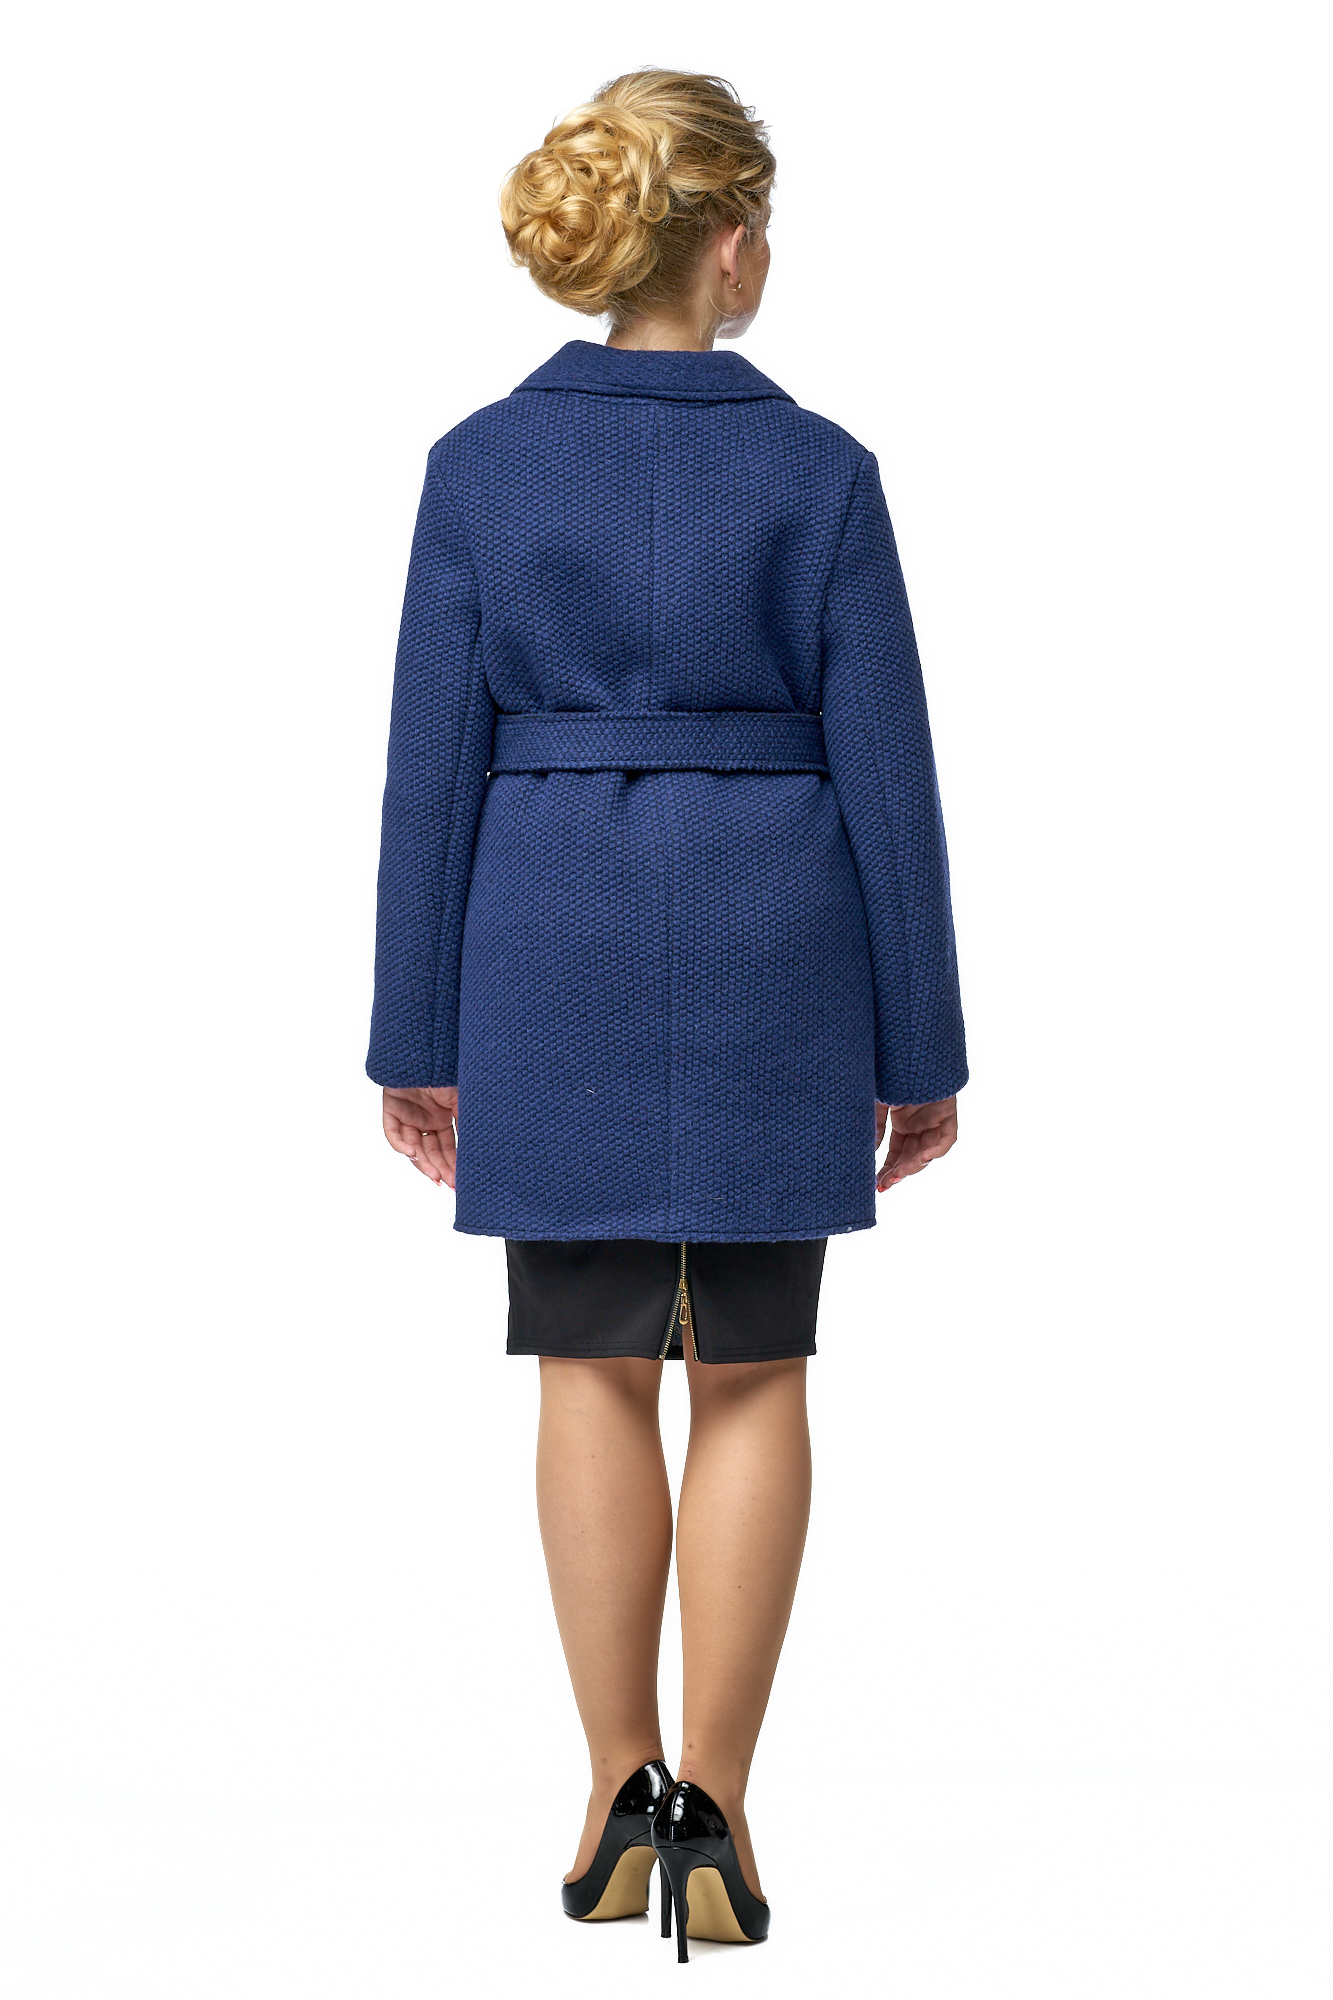 Женское пальто из текстиля с воротником 8002214-2